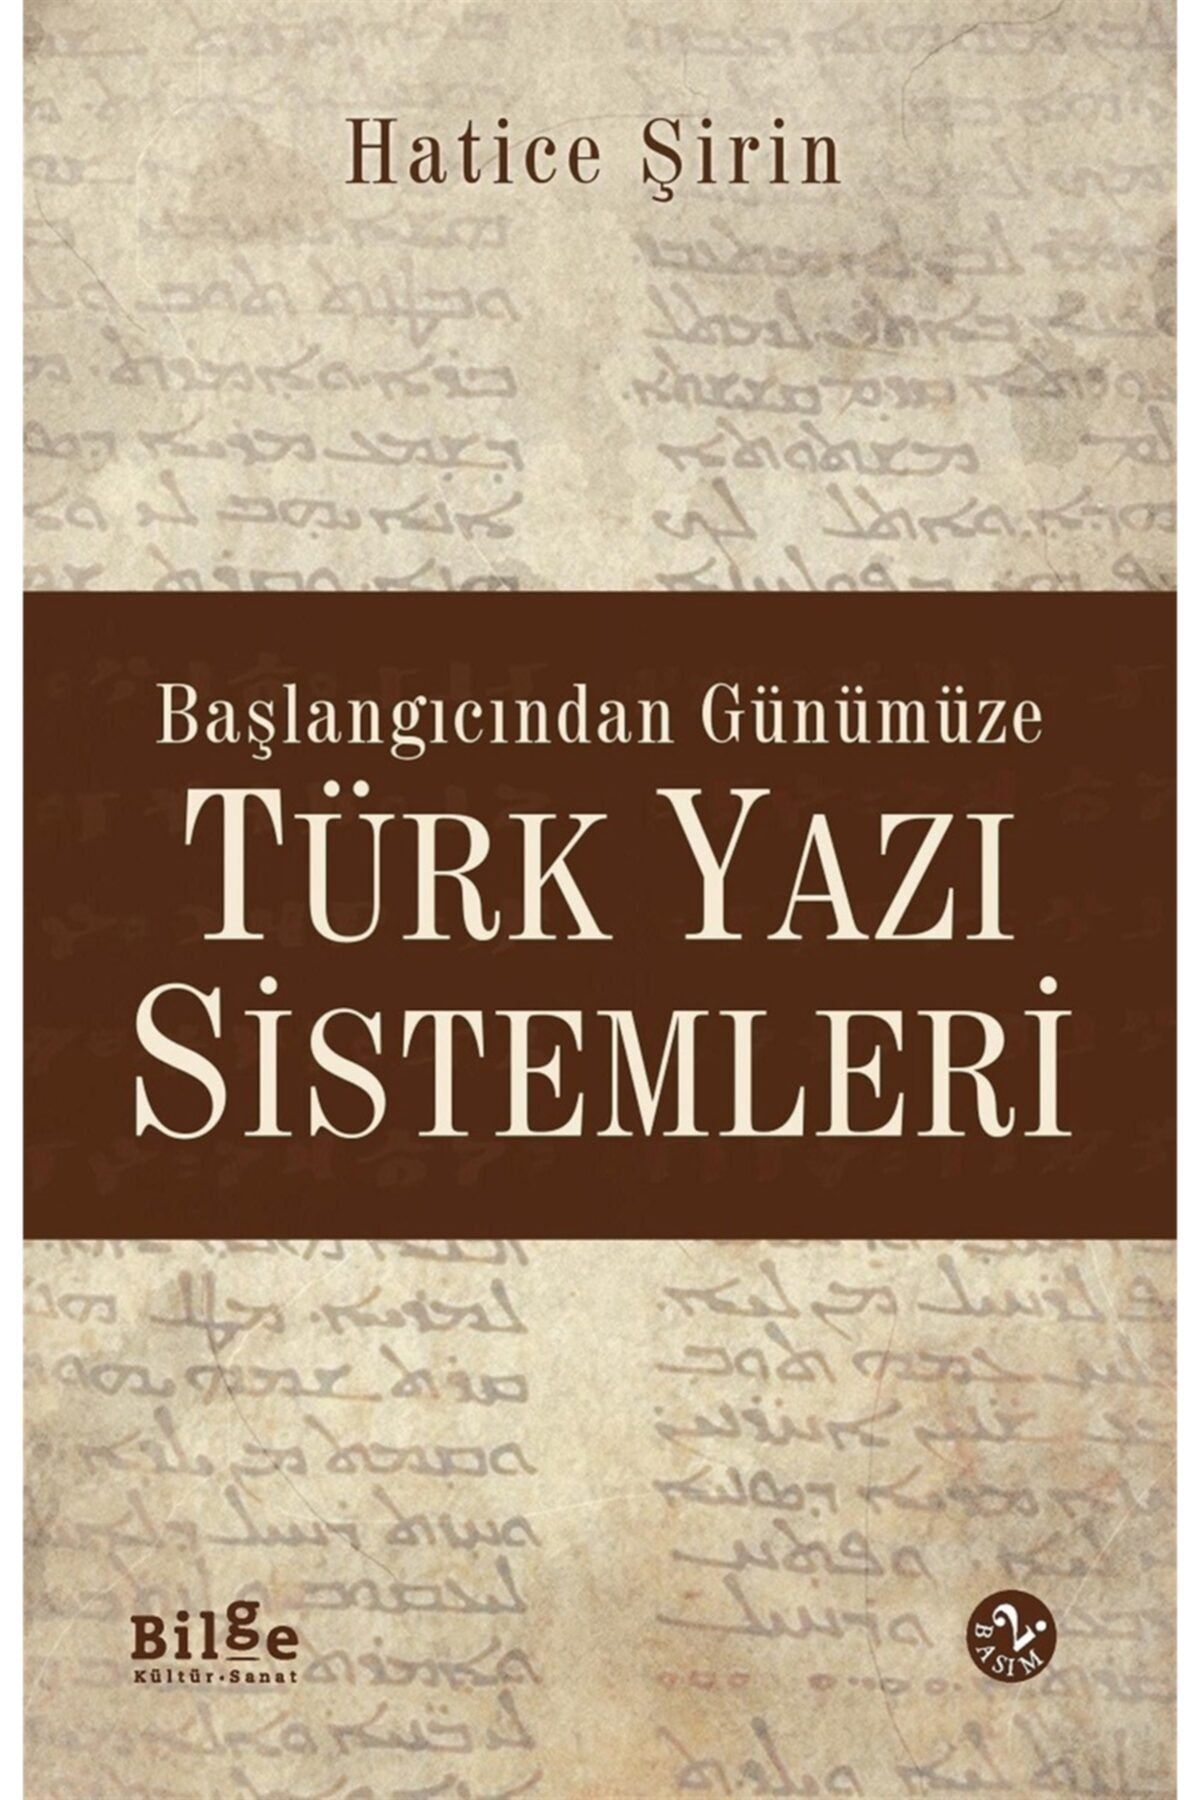 Bilge Kültür Sanat Başlangıcından Günümüze Türk Yazı Sistemleri - Hatice Şirin User 9786054921409